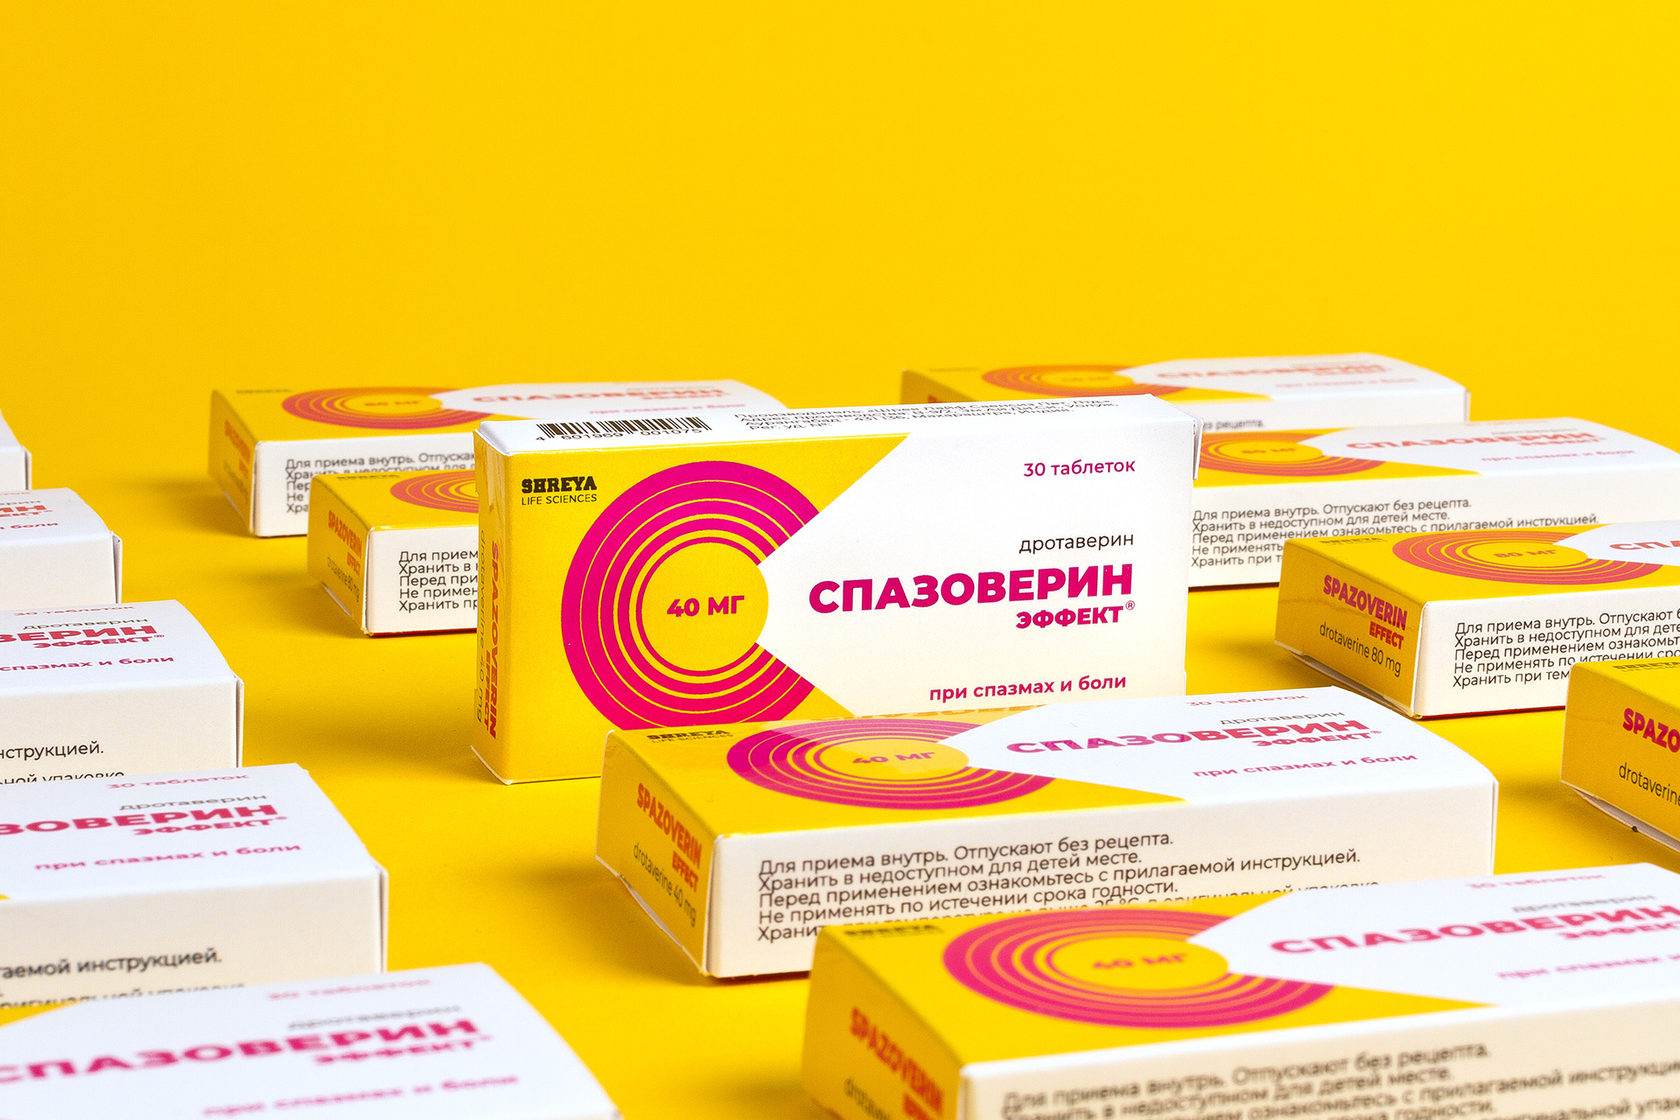 Дизайн упаковки лекарственного препарата Спазоверин